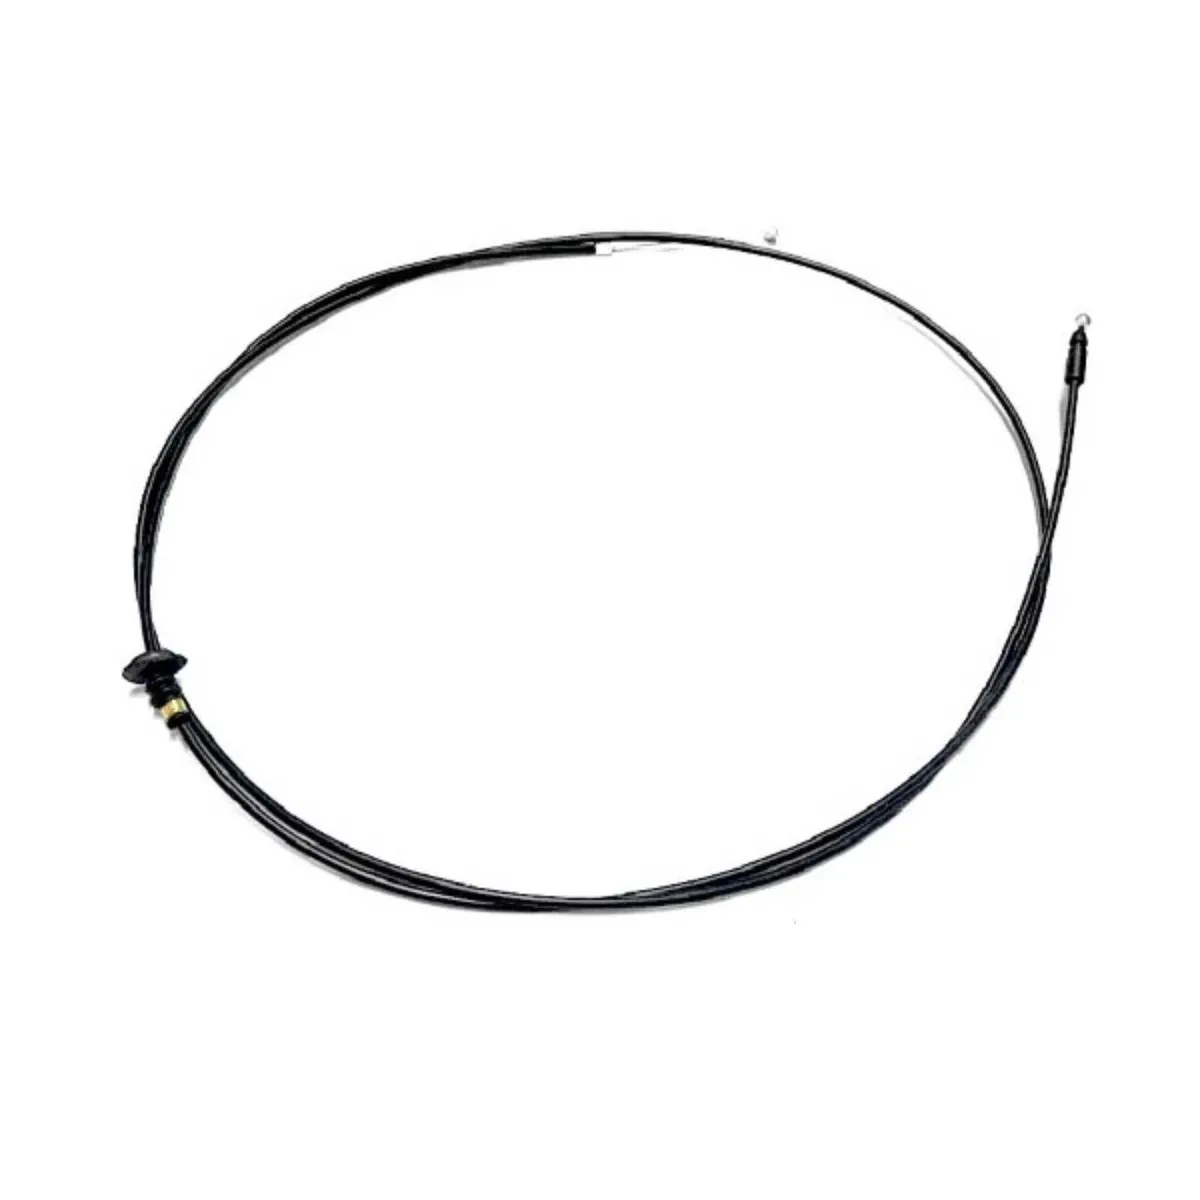 Toyota Hilux 2005-2016 Bonnet Cable - Image 1